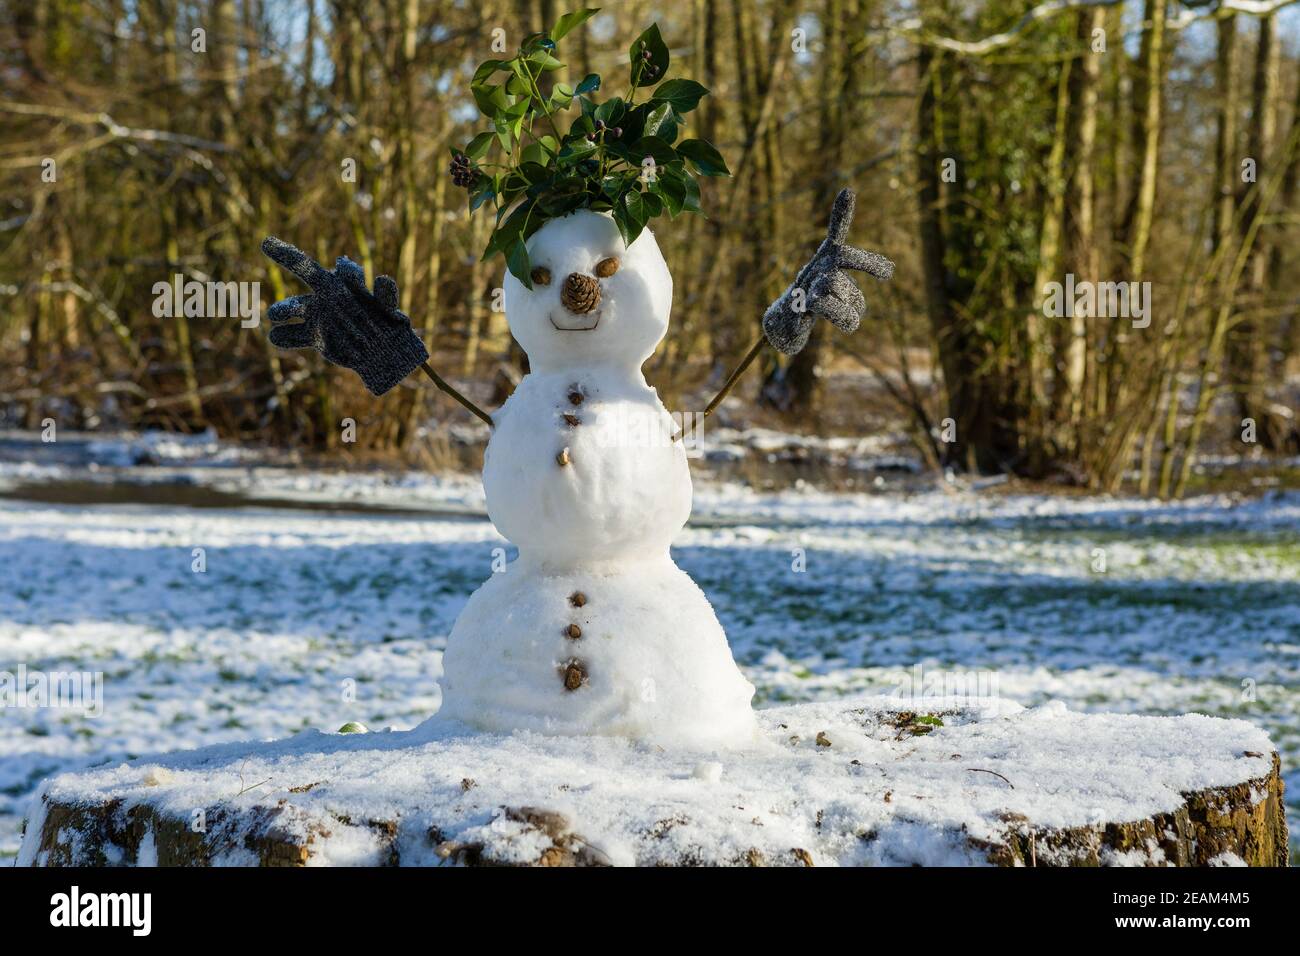 Niedlicher Schneemann aus drei Schneebällen mit Blättern für Haare, Zweige für Arme mit Kinderhandschuhen, Tannenzapfen für Nase und Steine für Knöpfe. Stockfoto